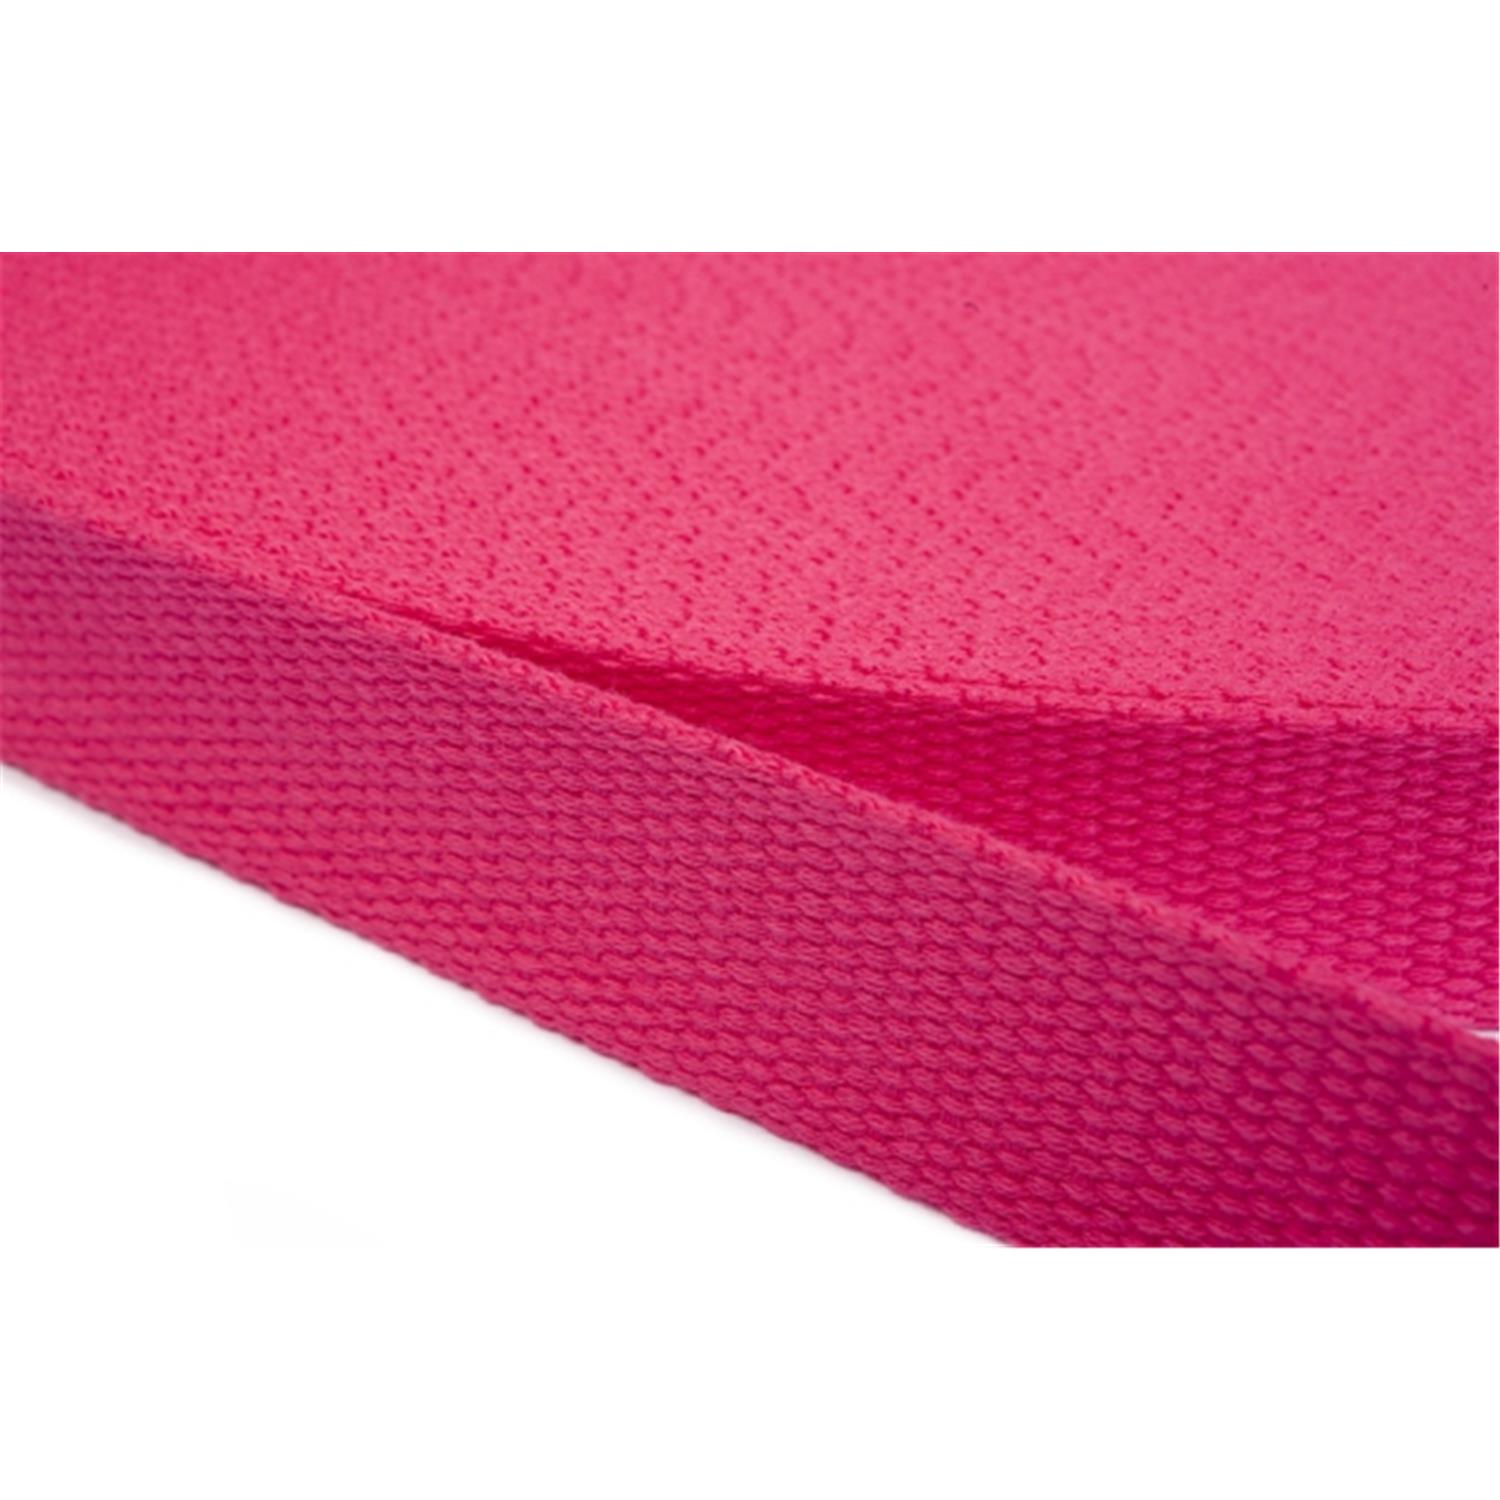 Gurtband aus Baumwolle 10mm in 20 Farben 07 - rosa/pink 6 Meter